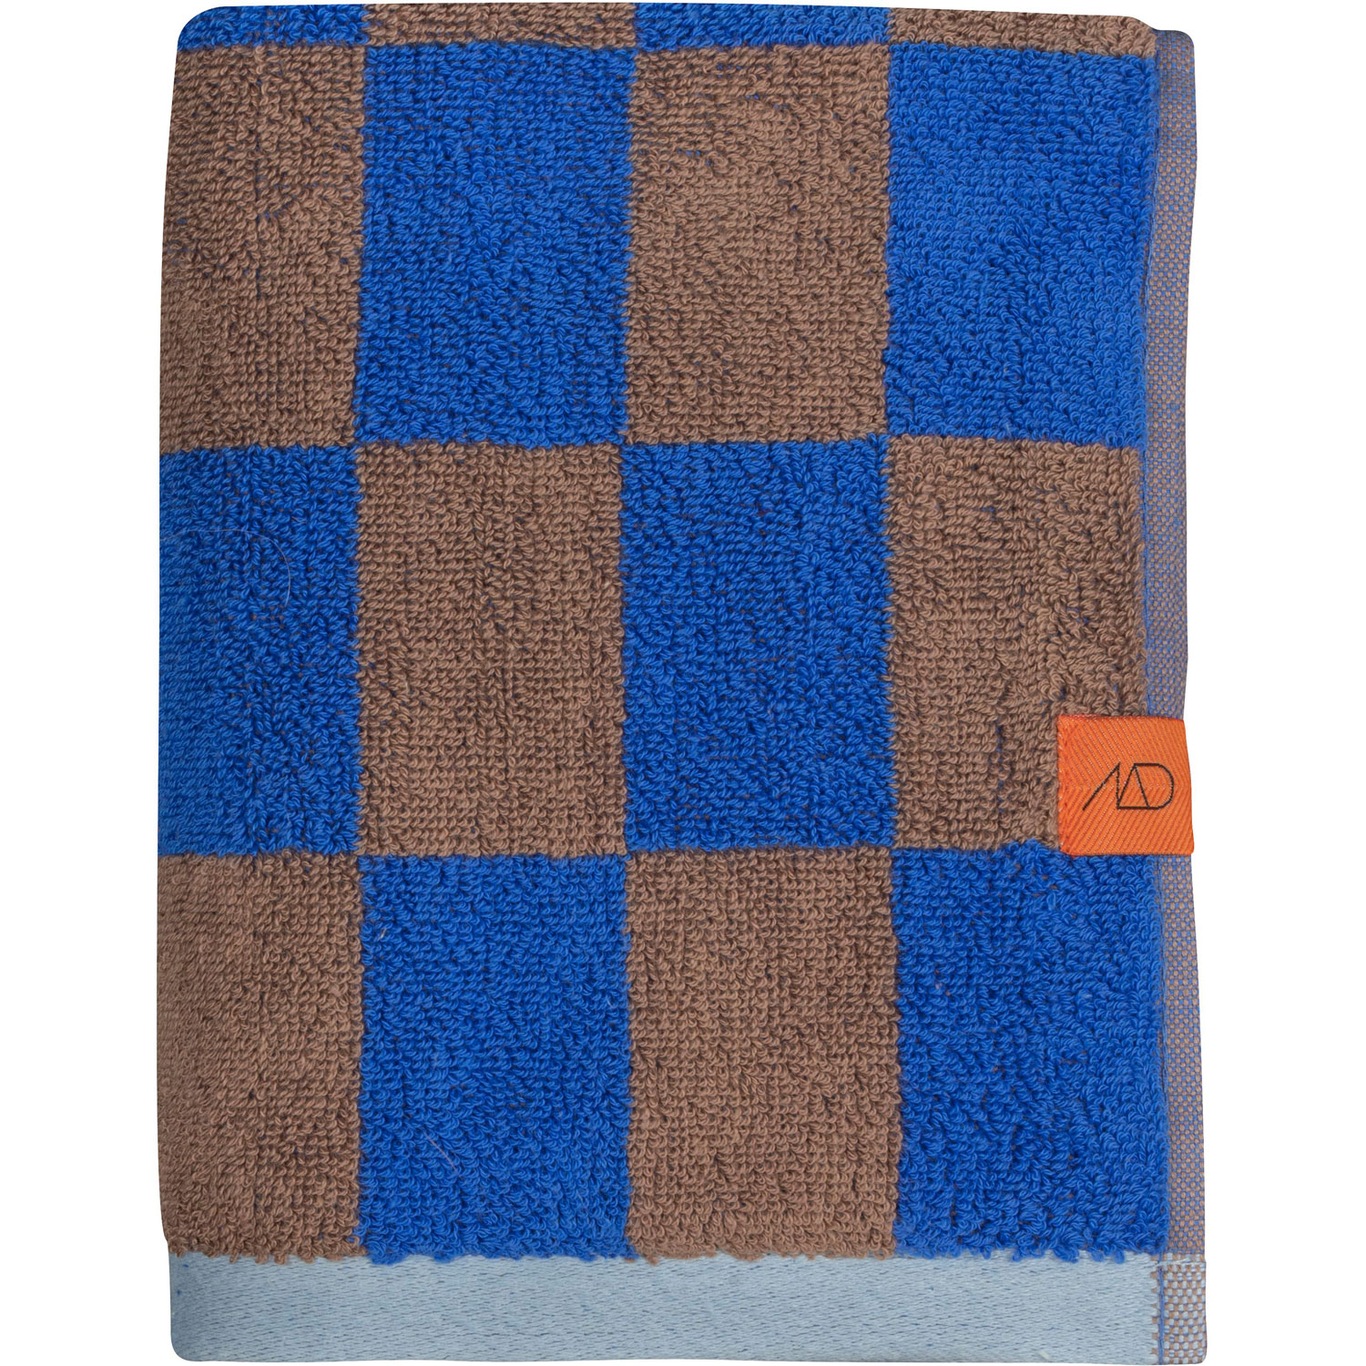 Retro Towel 50x90 cm, Cobalt-blue